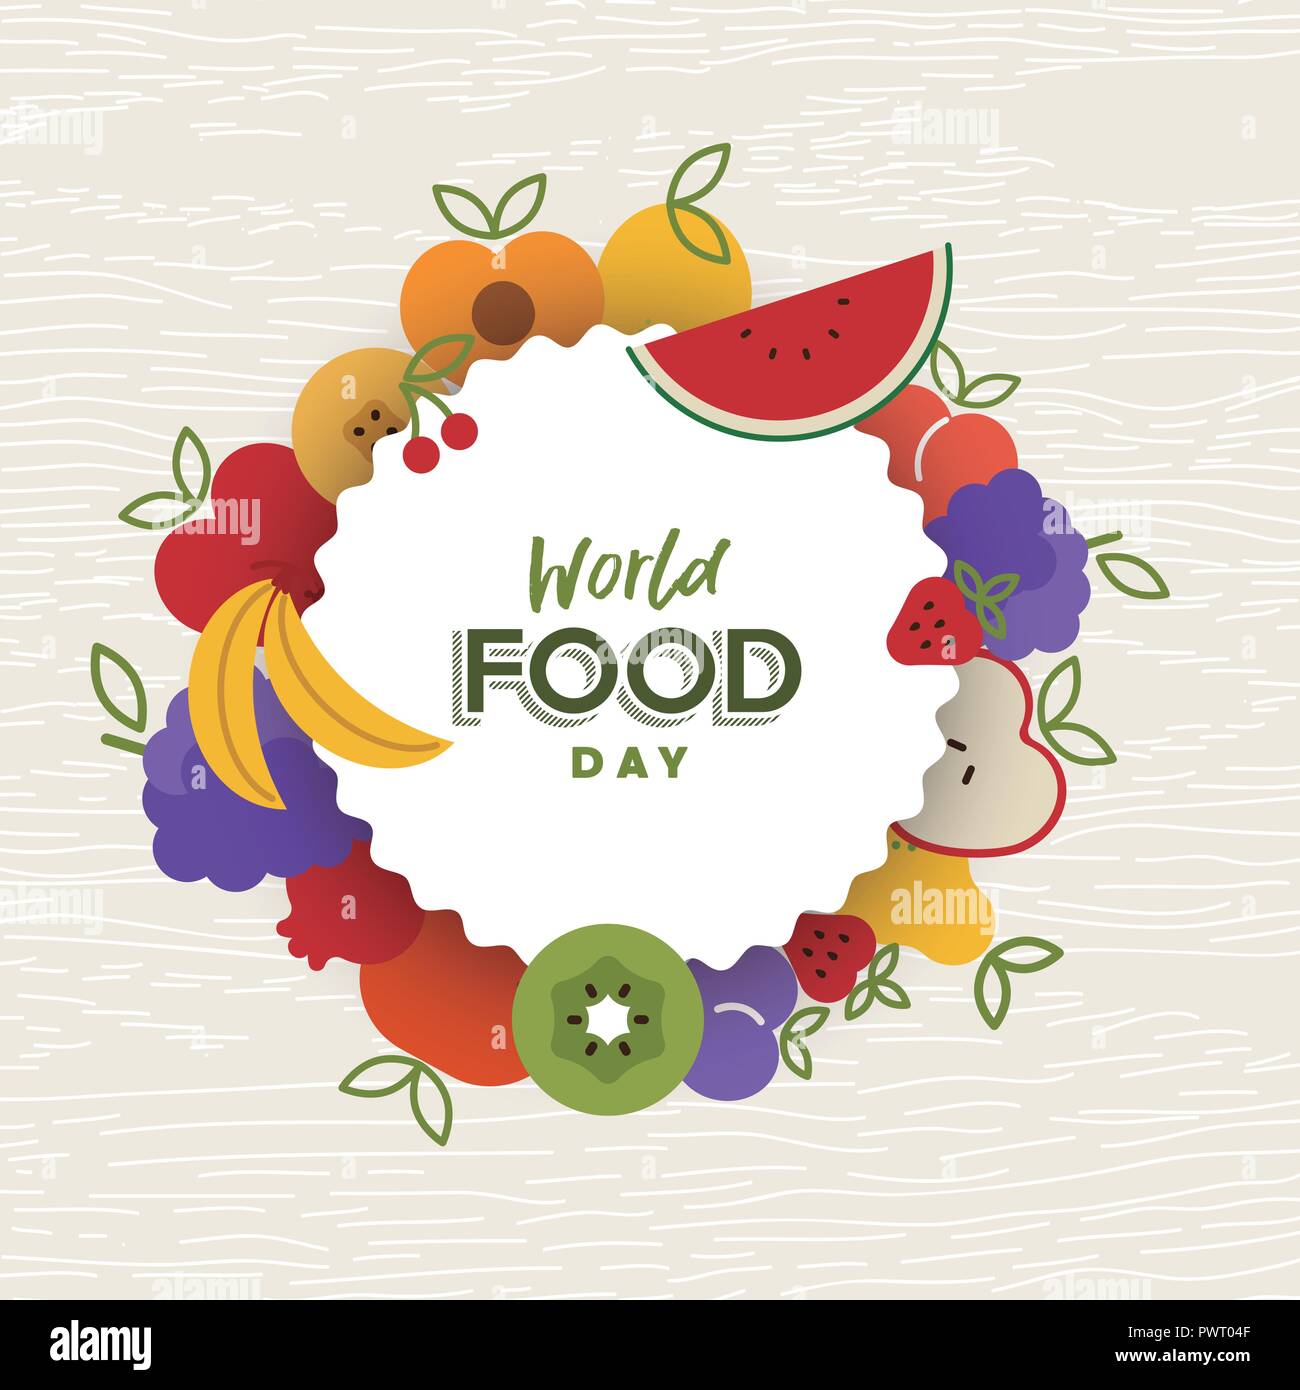 La Journée mondiale de l'alimentation, l'illustration de carte de vœux pour la Nutrition et saine alimentation avec télévision en couleurs cartoon icônes de fruits. Illustration de Vecteur